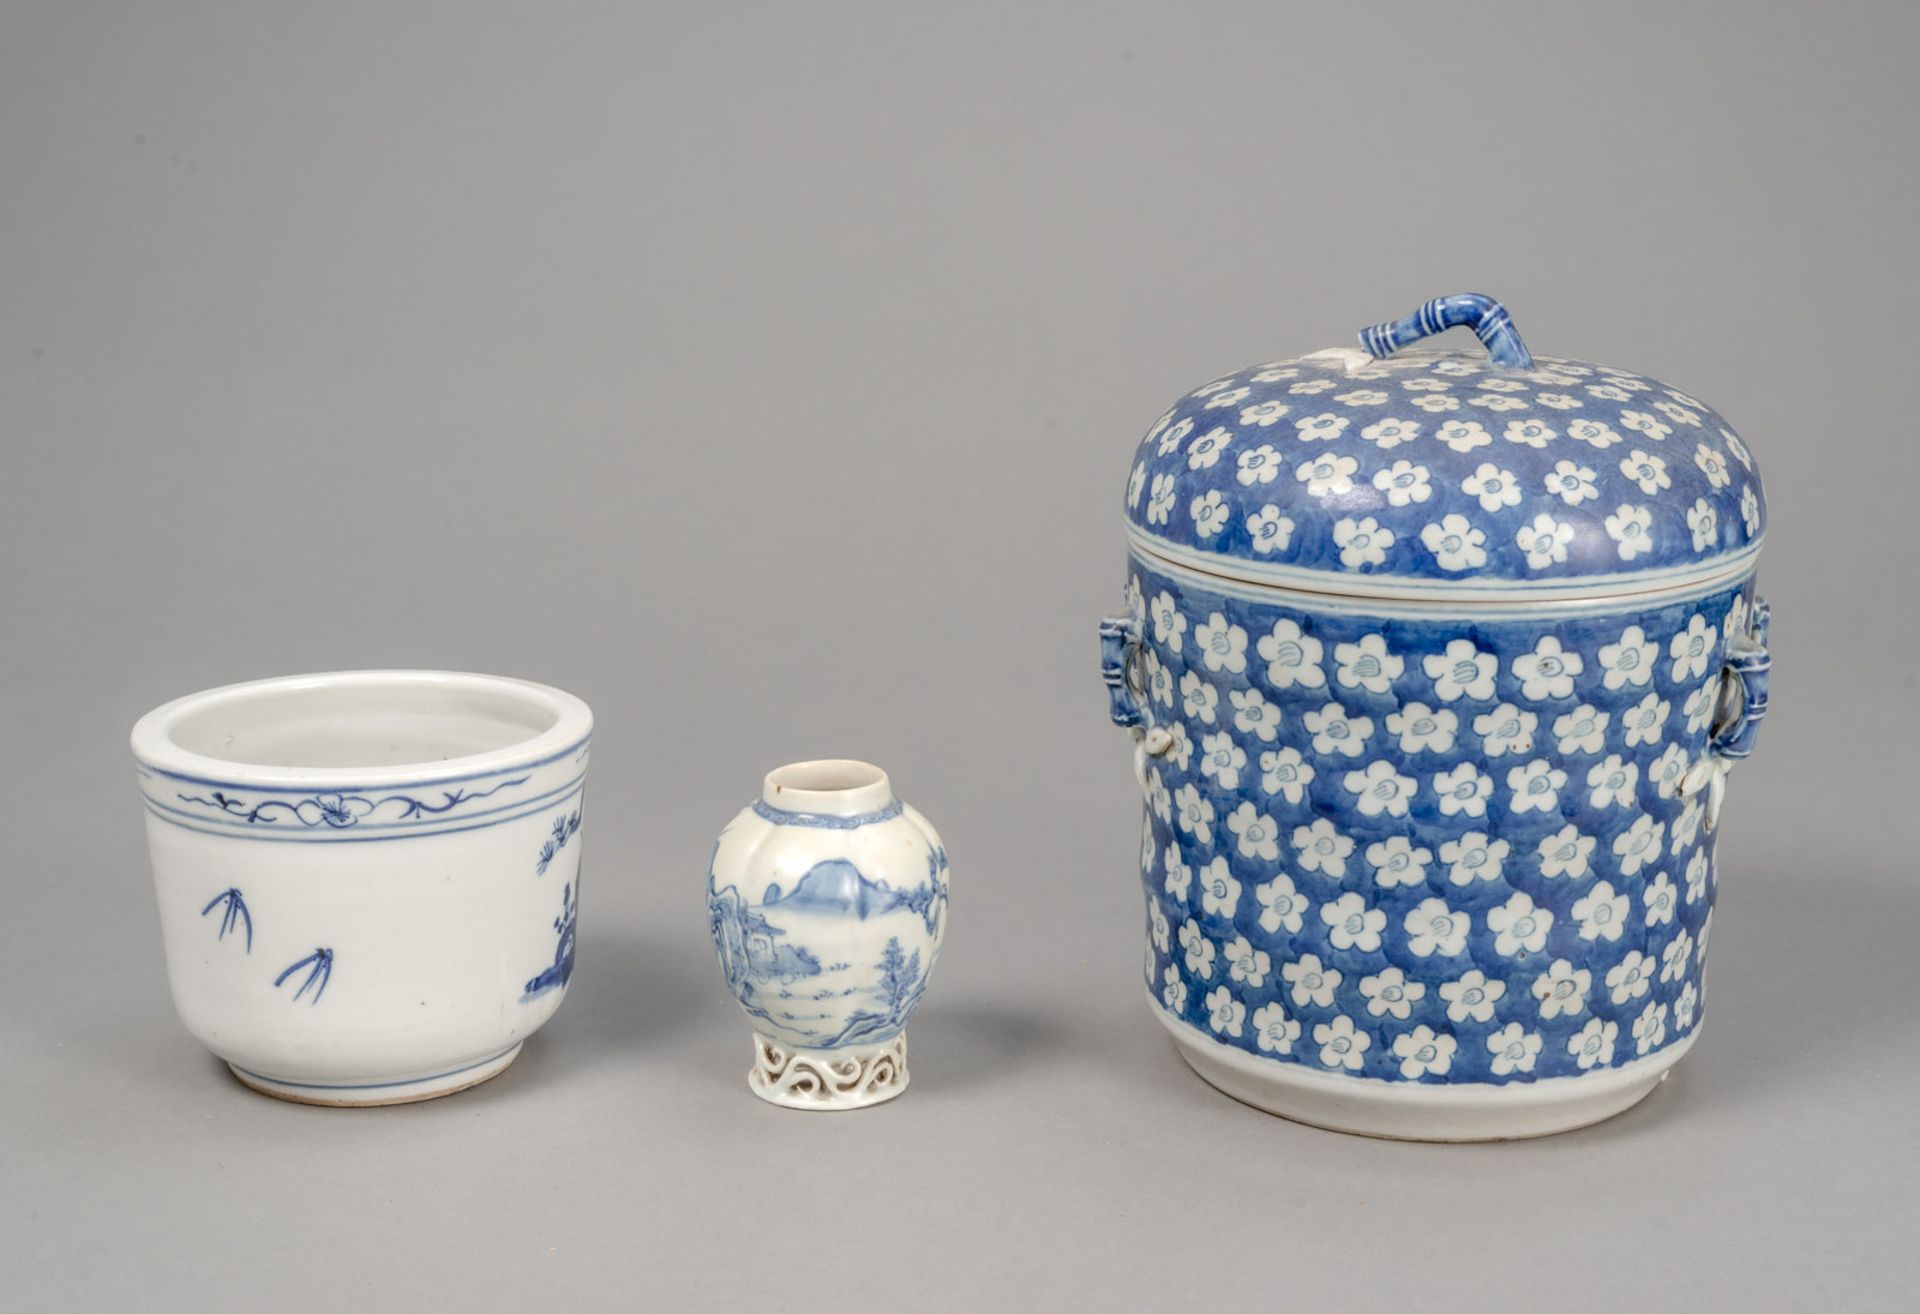 Deckeldose mit Bambus- und Prunusdekor, Weihrauchbrenner und kleine Vase aus Blau-weiß-Porzellan - Bild 3 aus 4